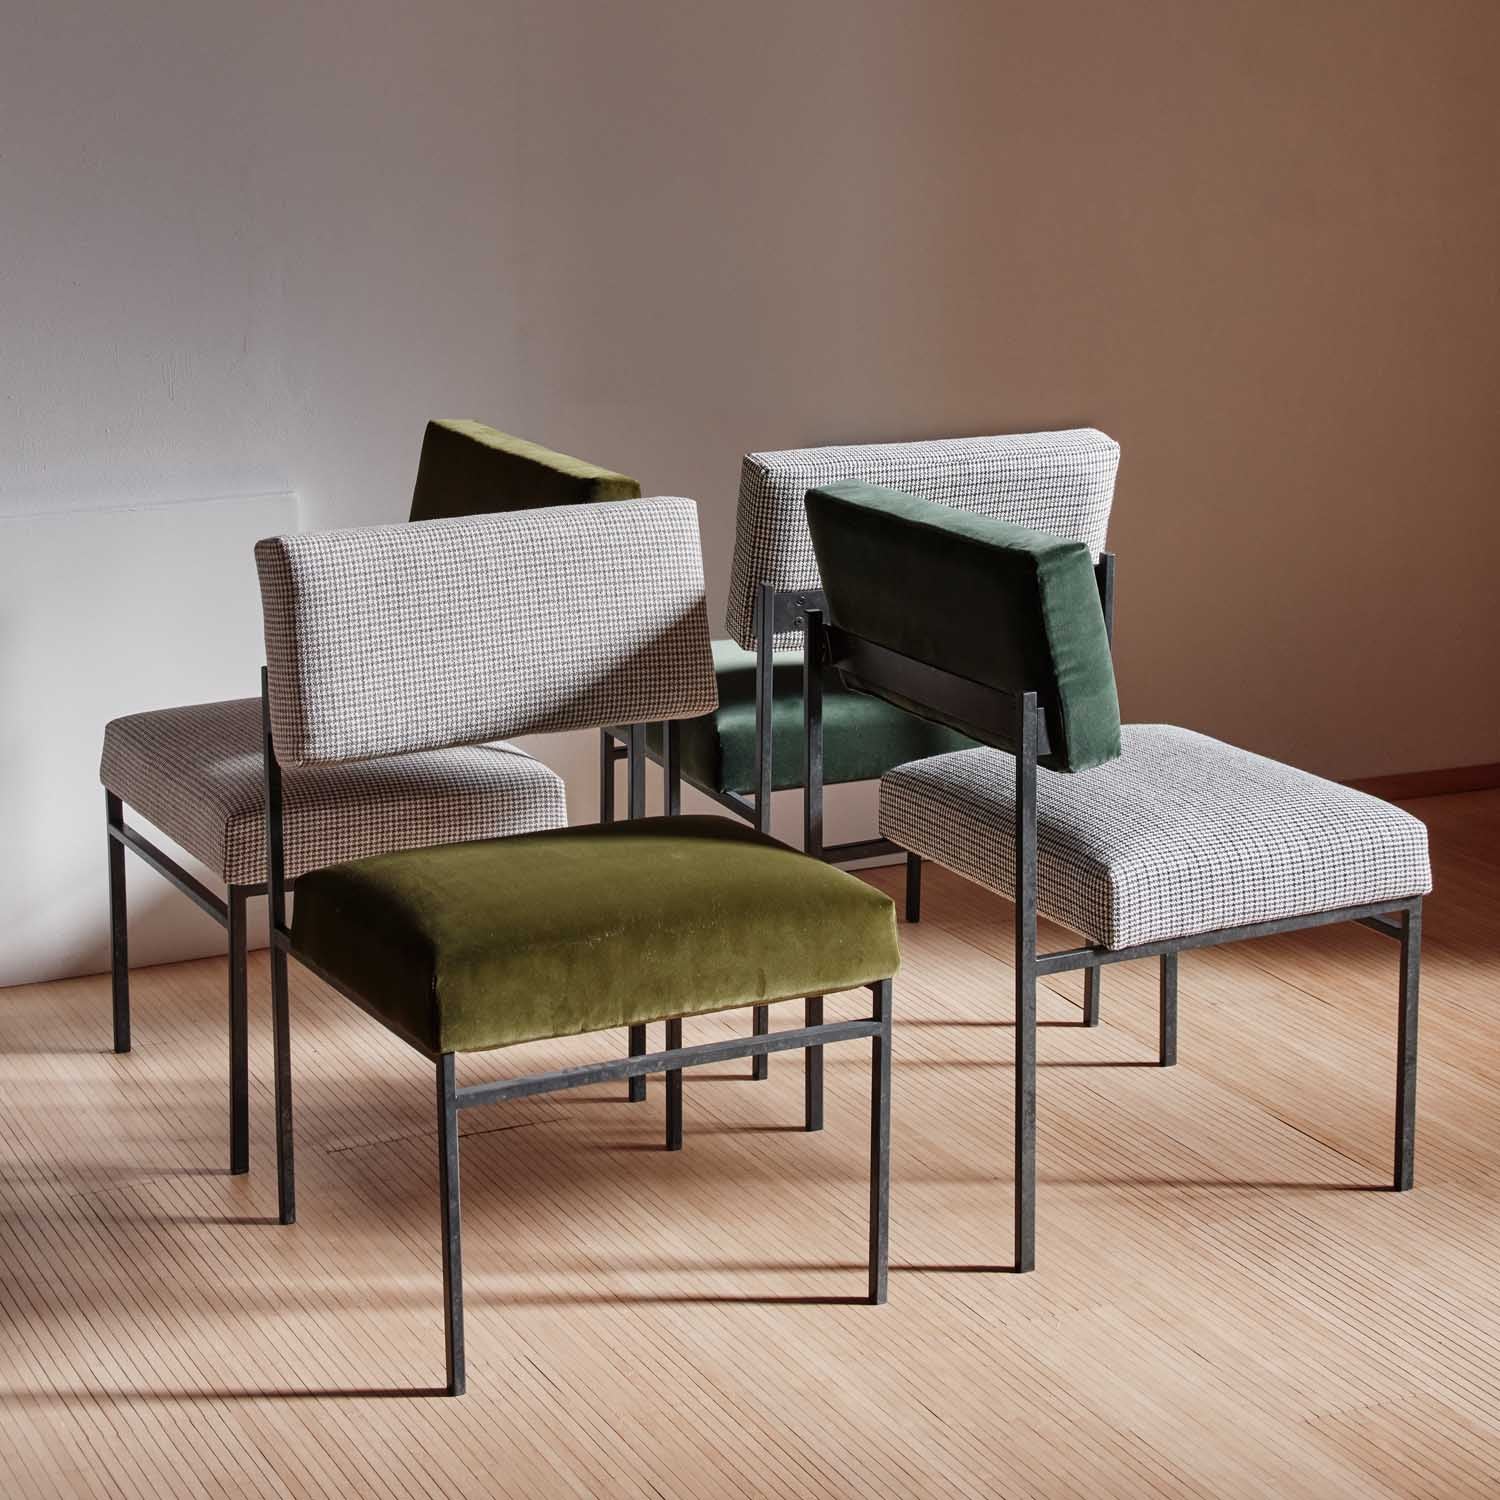 50s-Inspired Design – Timeless Aesthetics restaurant dining chair